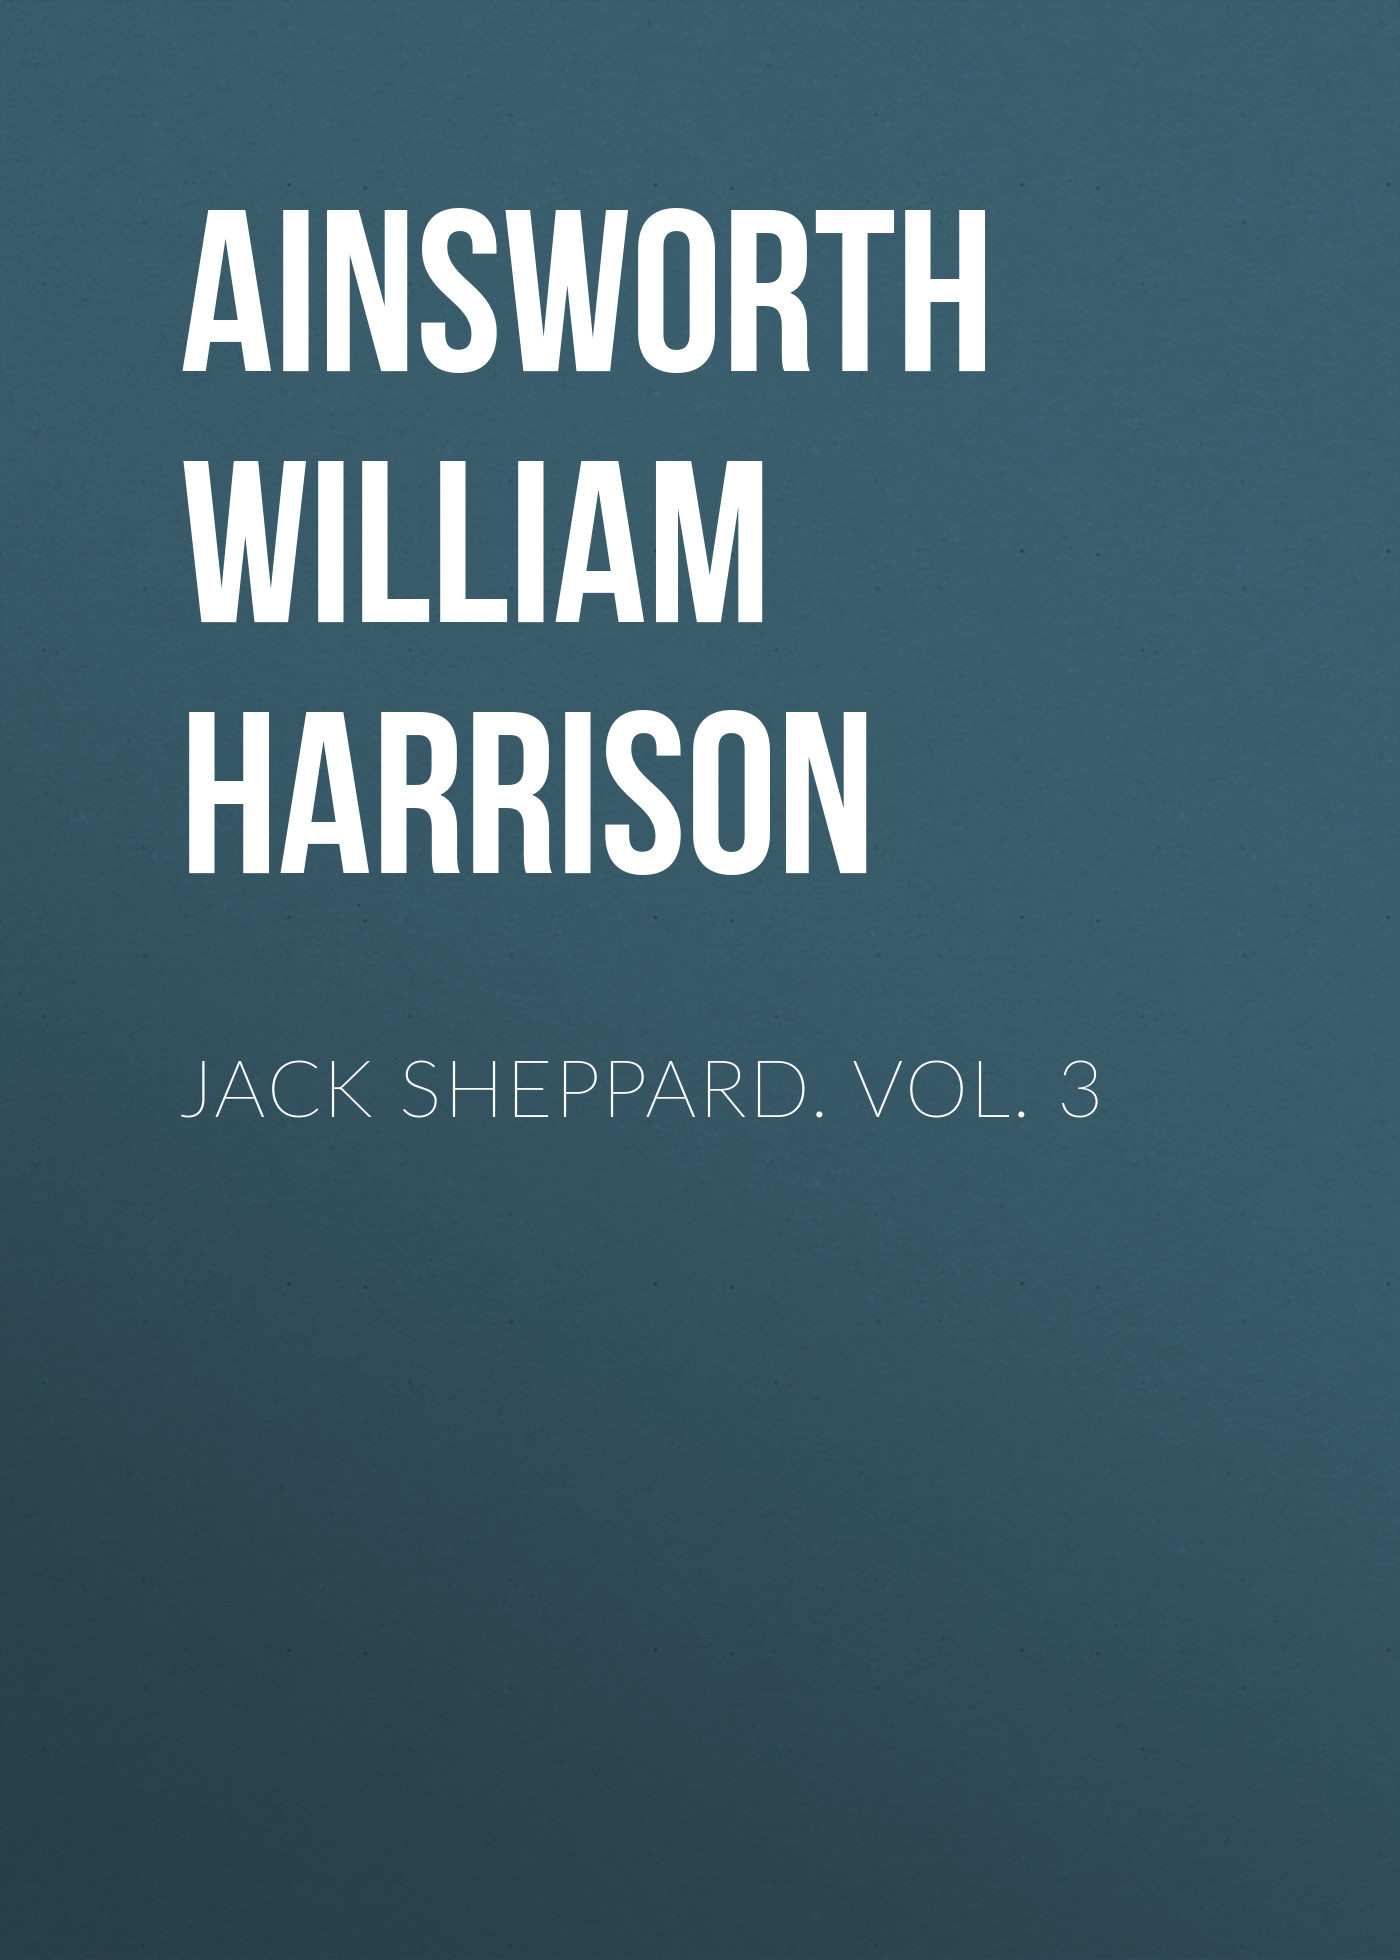 Книга Jack Sheppard. Vol. 3 из серии , созданная William Ainsworth, может относится к жанру Зарубежная классика, Литература 19 века, Европейская старинная литература. Стоимость электронной книги Jack Sheppard. Vol. 3 с идентификатором 36364414 составляет 0 руб.